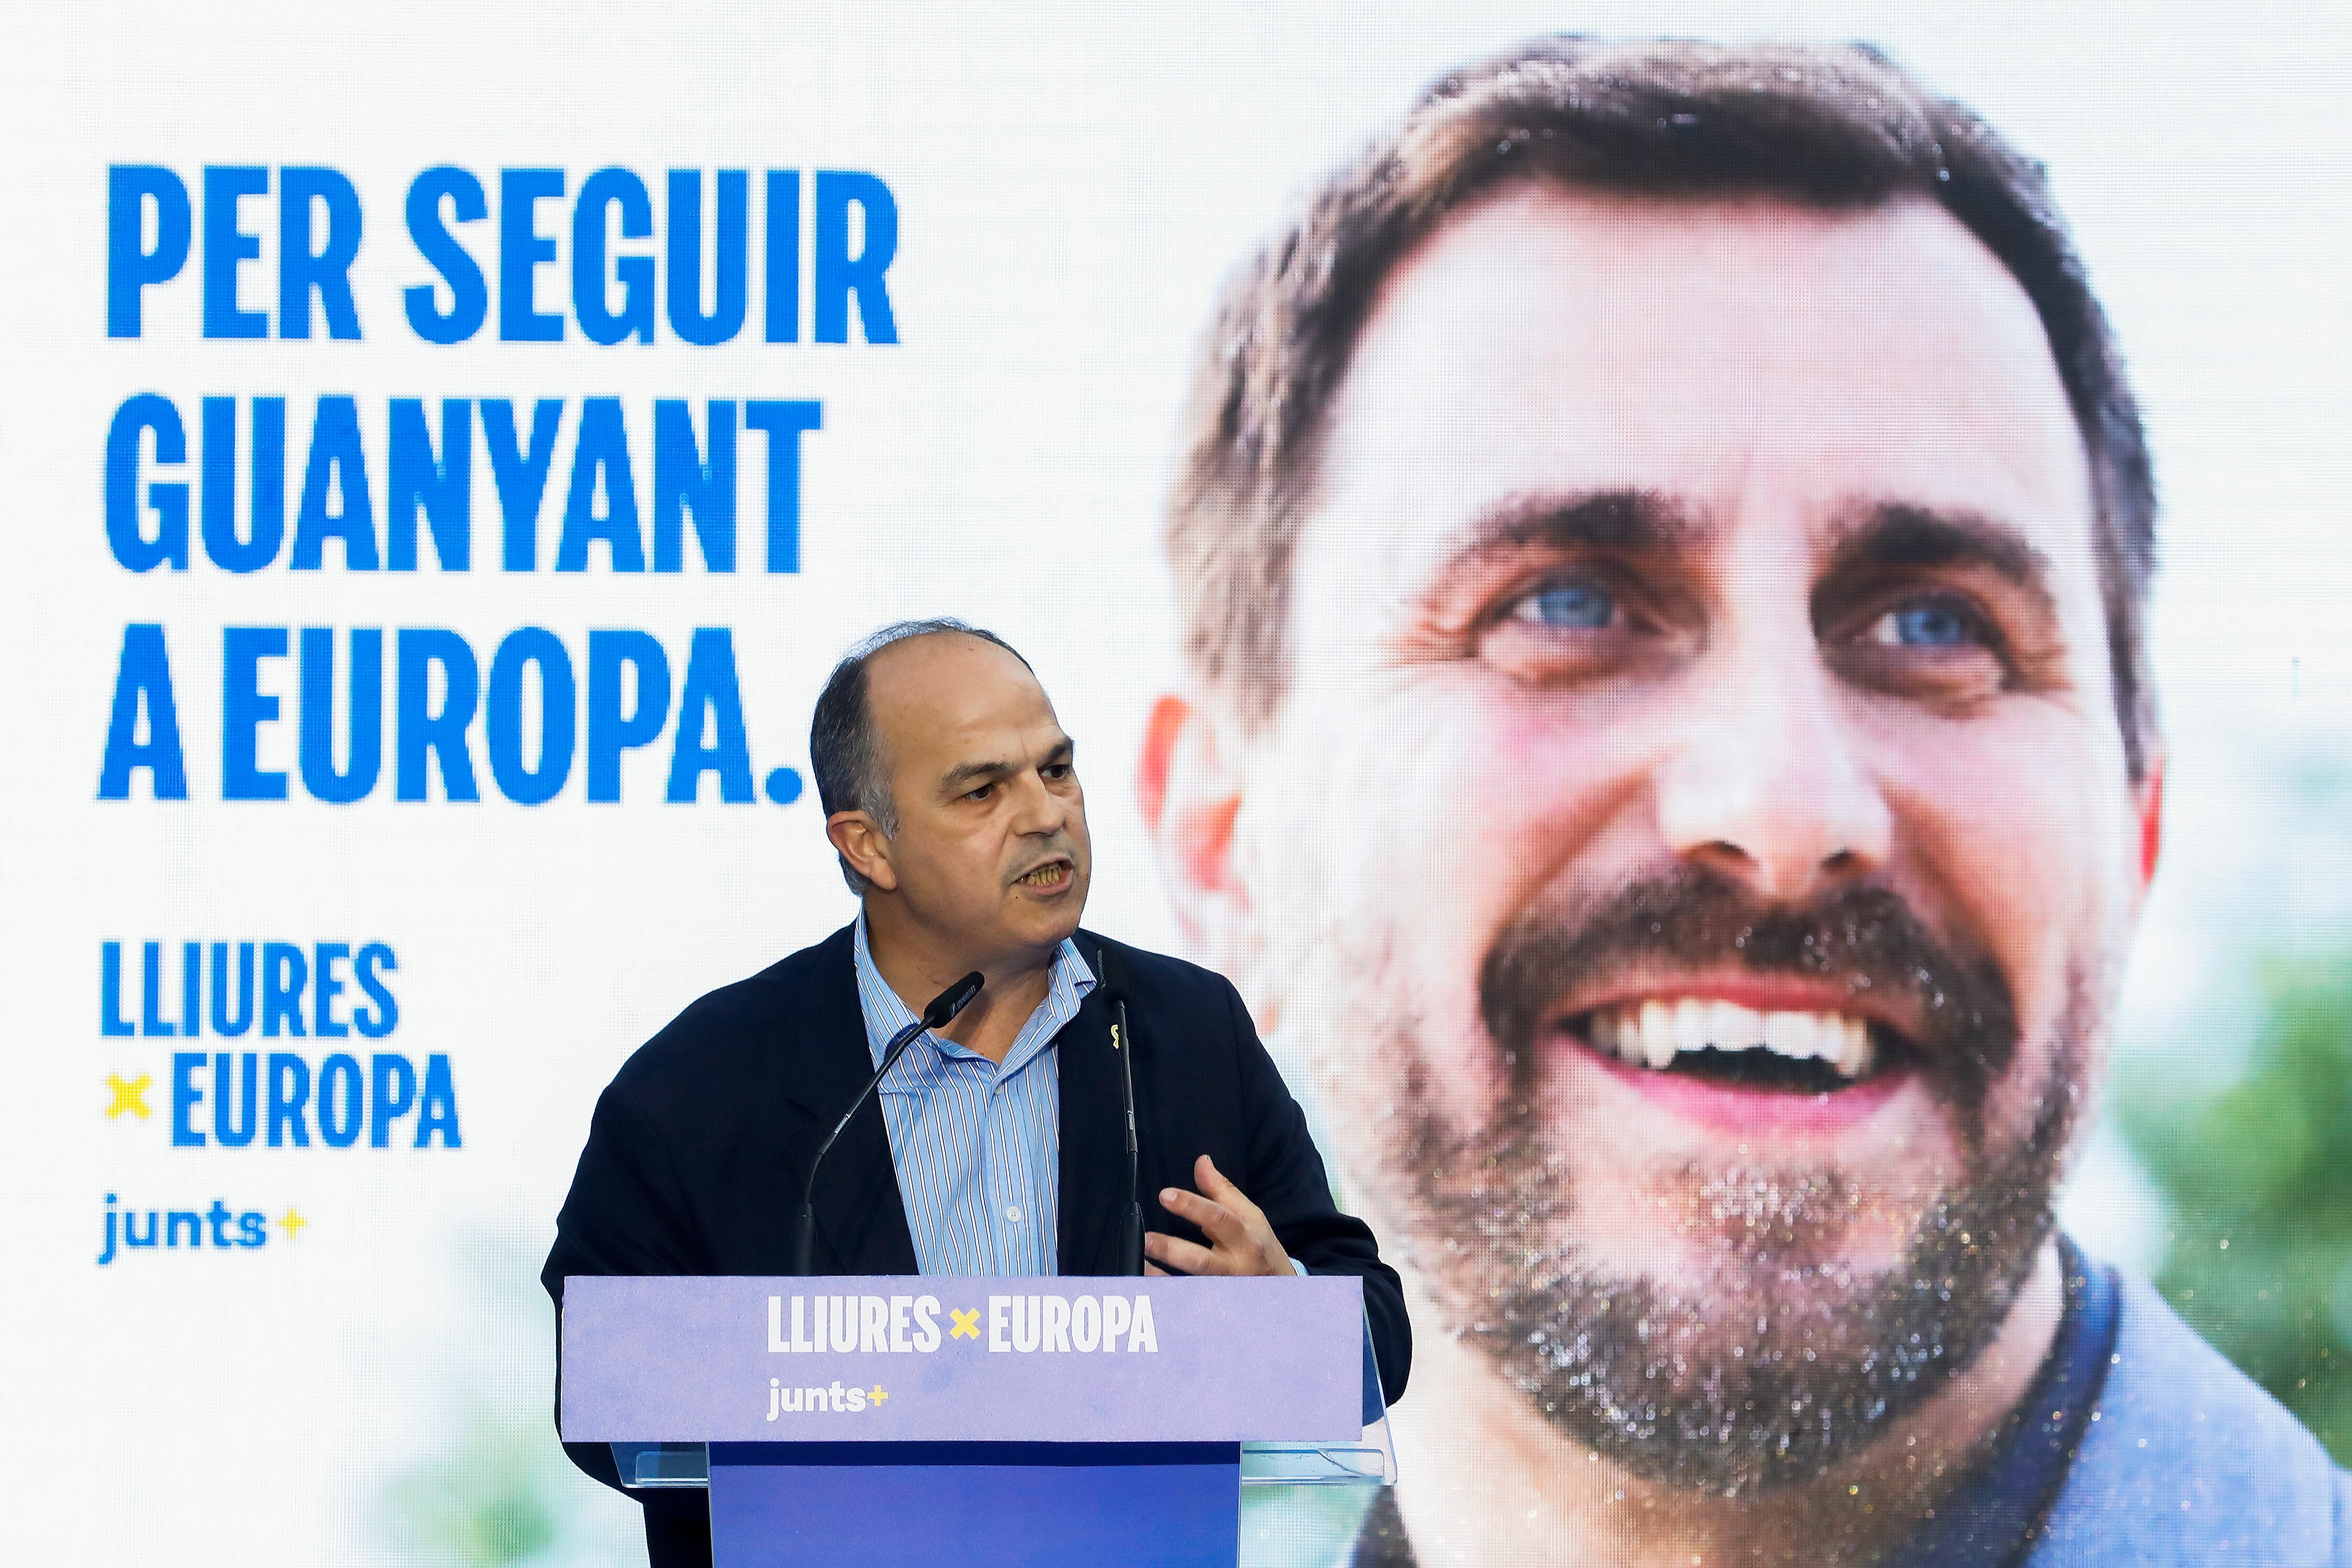 El exconseller Jordi Turull interviene en el acto de inicio de campaña de JxCat para las elecciones europeas en Barcelona, el 23 de mayo. Al fondo, una imagen de Toni Comín, candidato a las elecciones europeas.